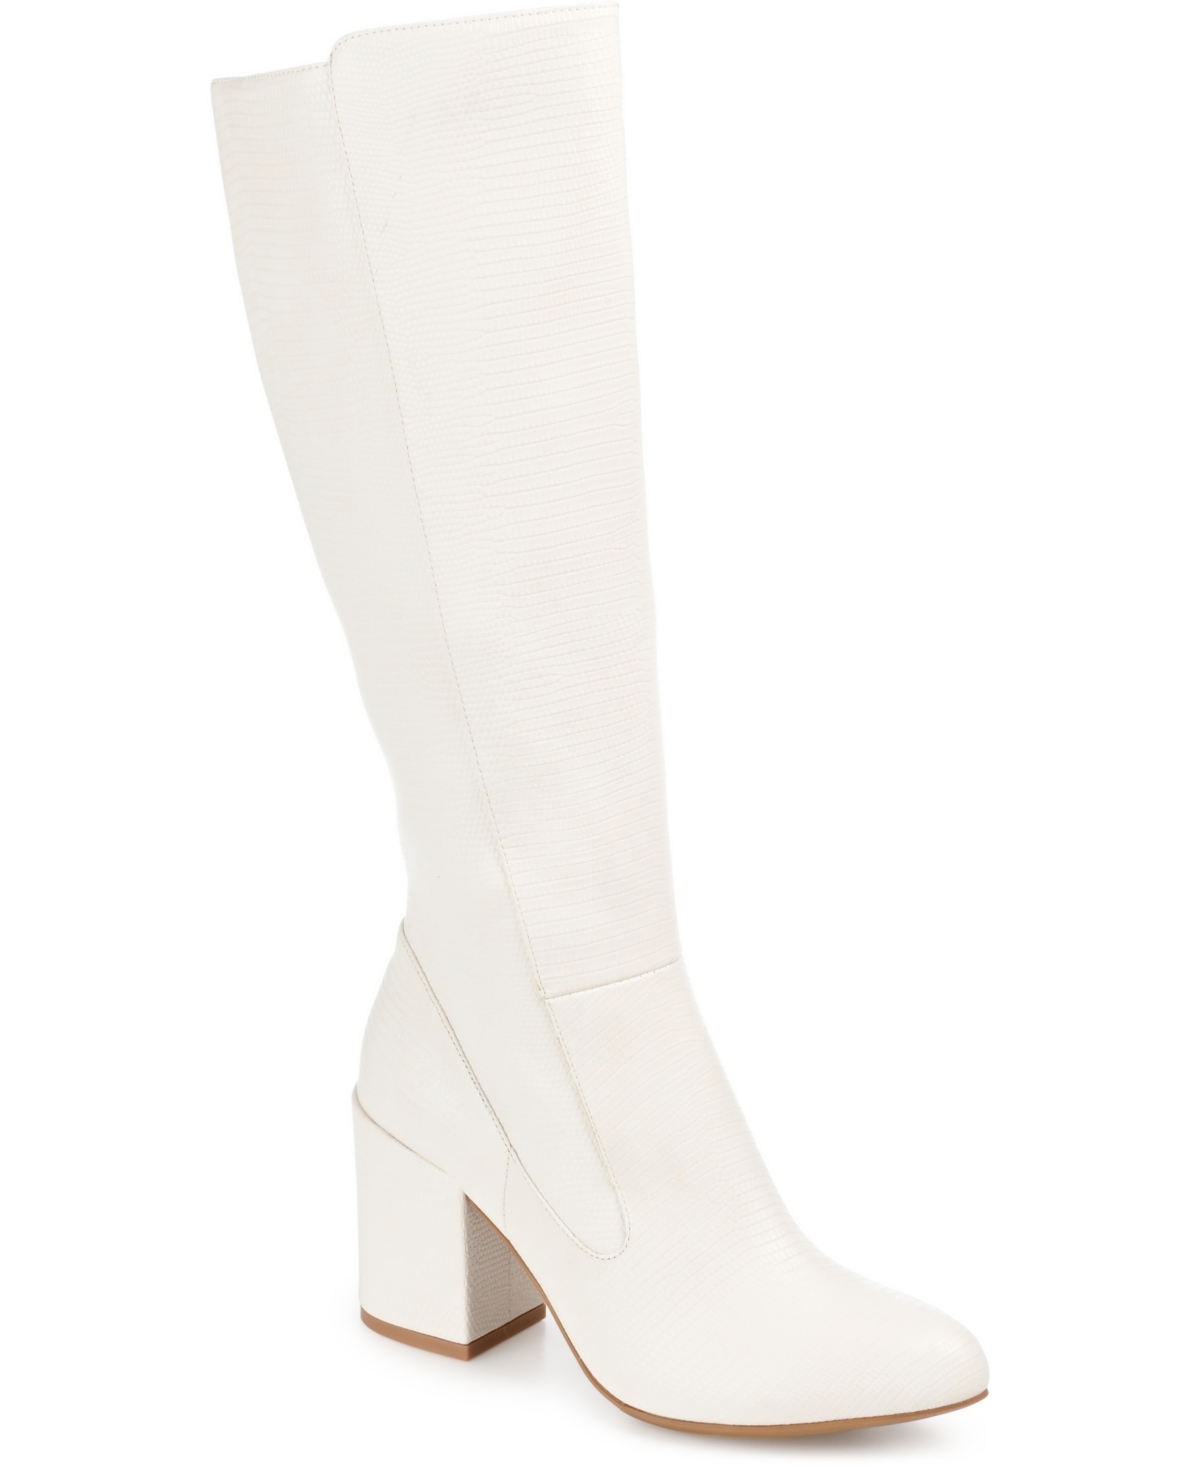 Women's Tavia Boots - White